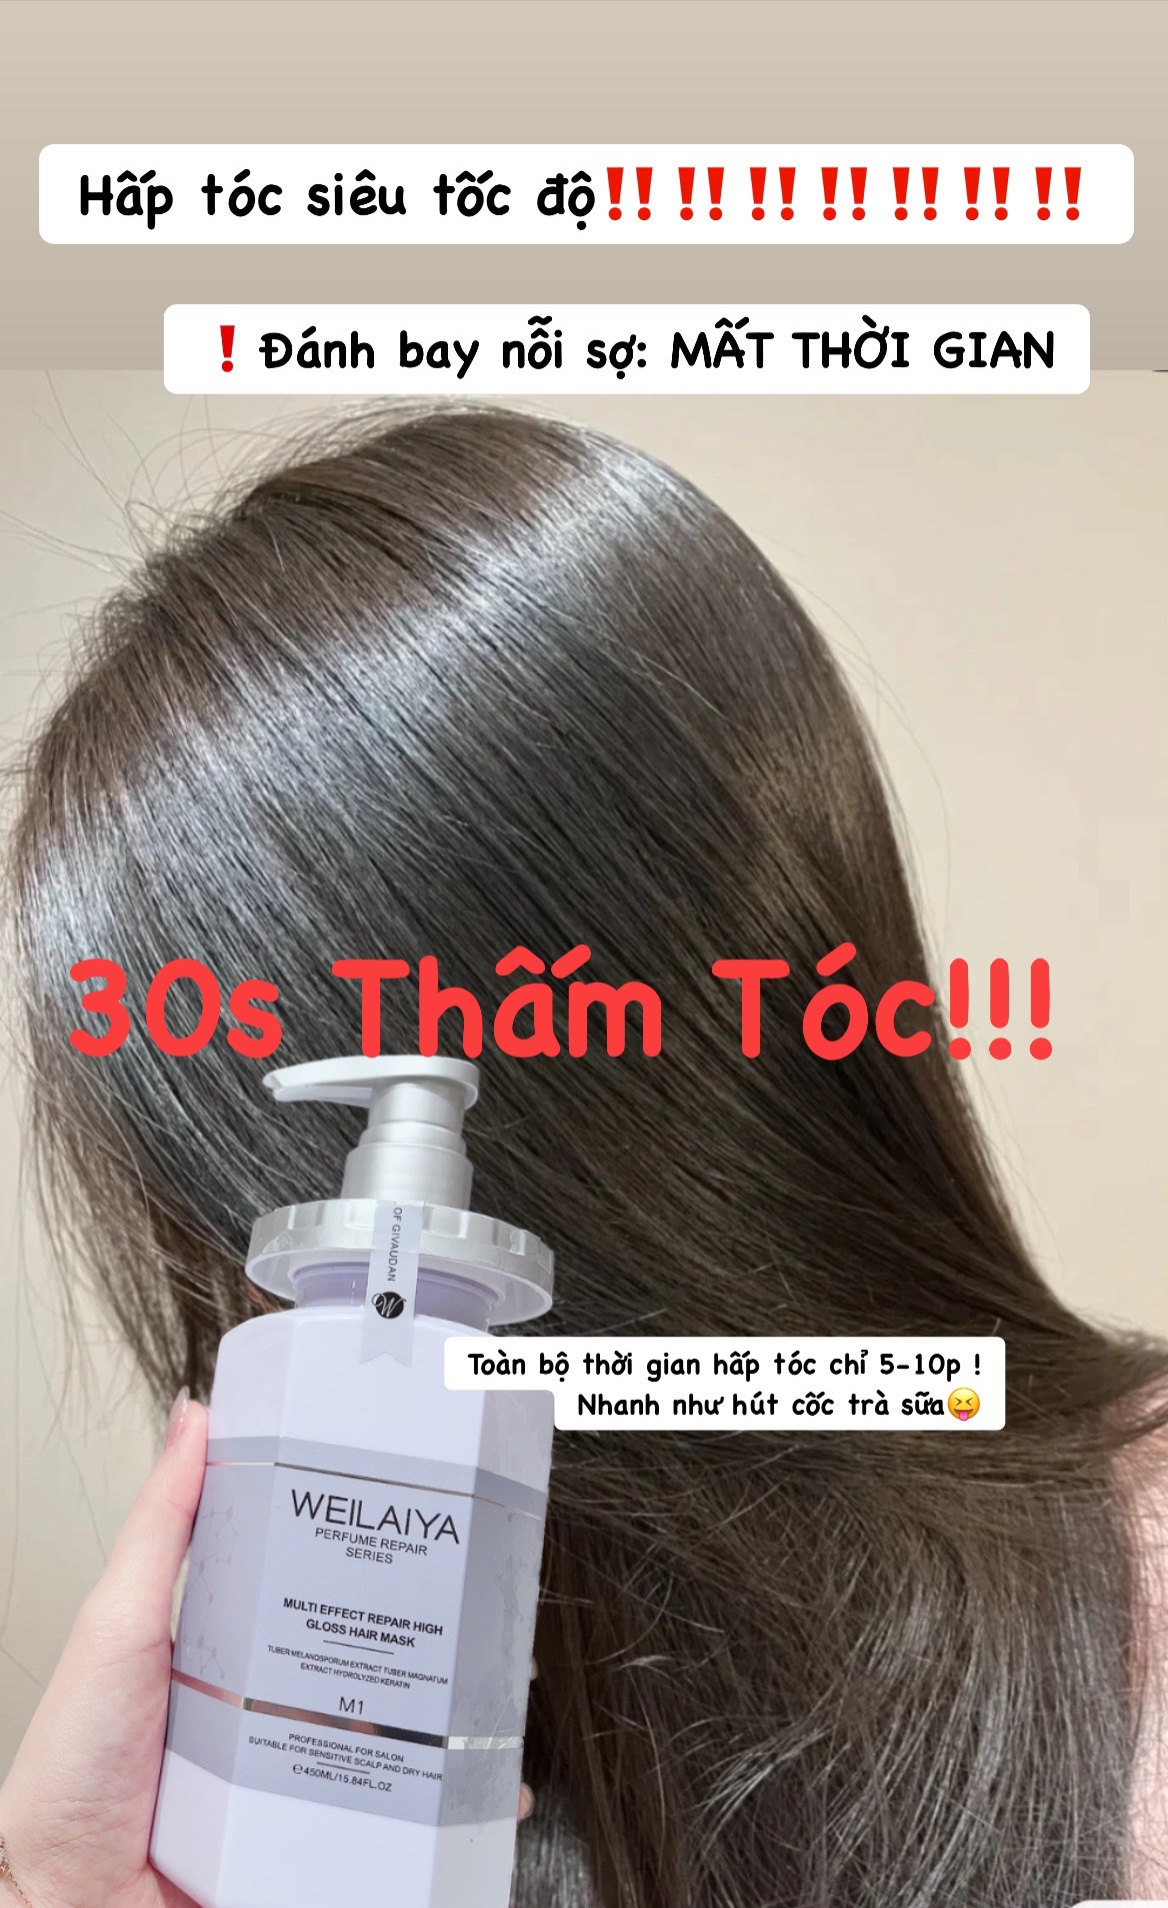 hấp tóc đa tầng Weilaiya giá rẻ khuyến mãi đặc biệt trong tháng 4 năm 2023 - myphamfrozen.vn